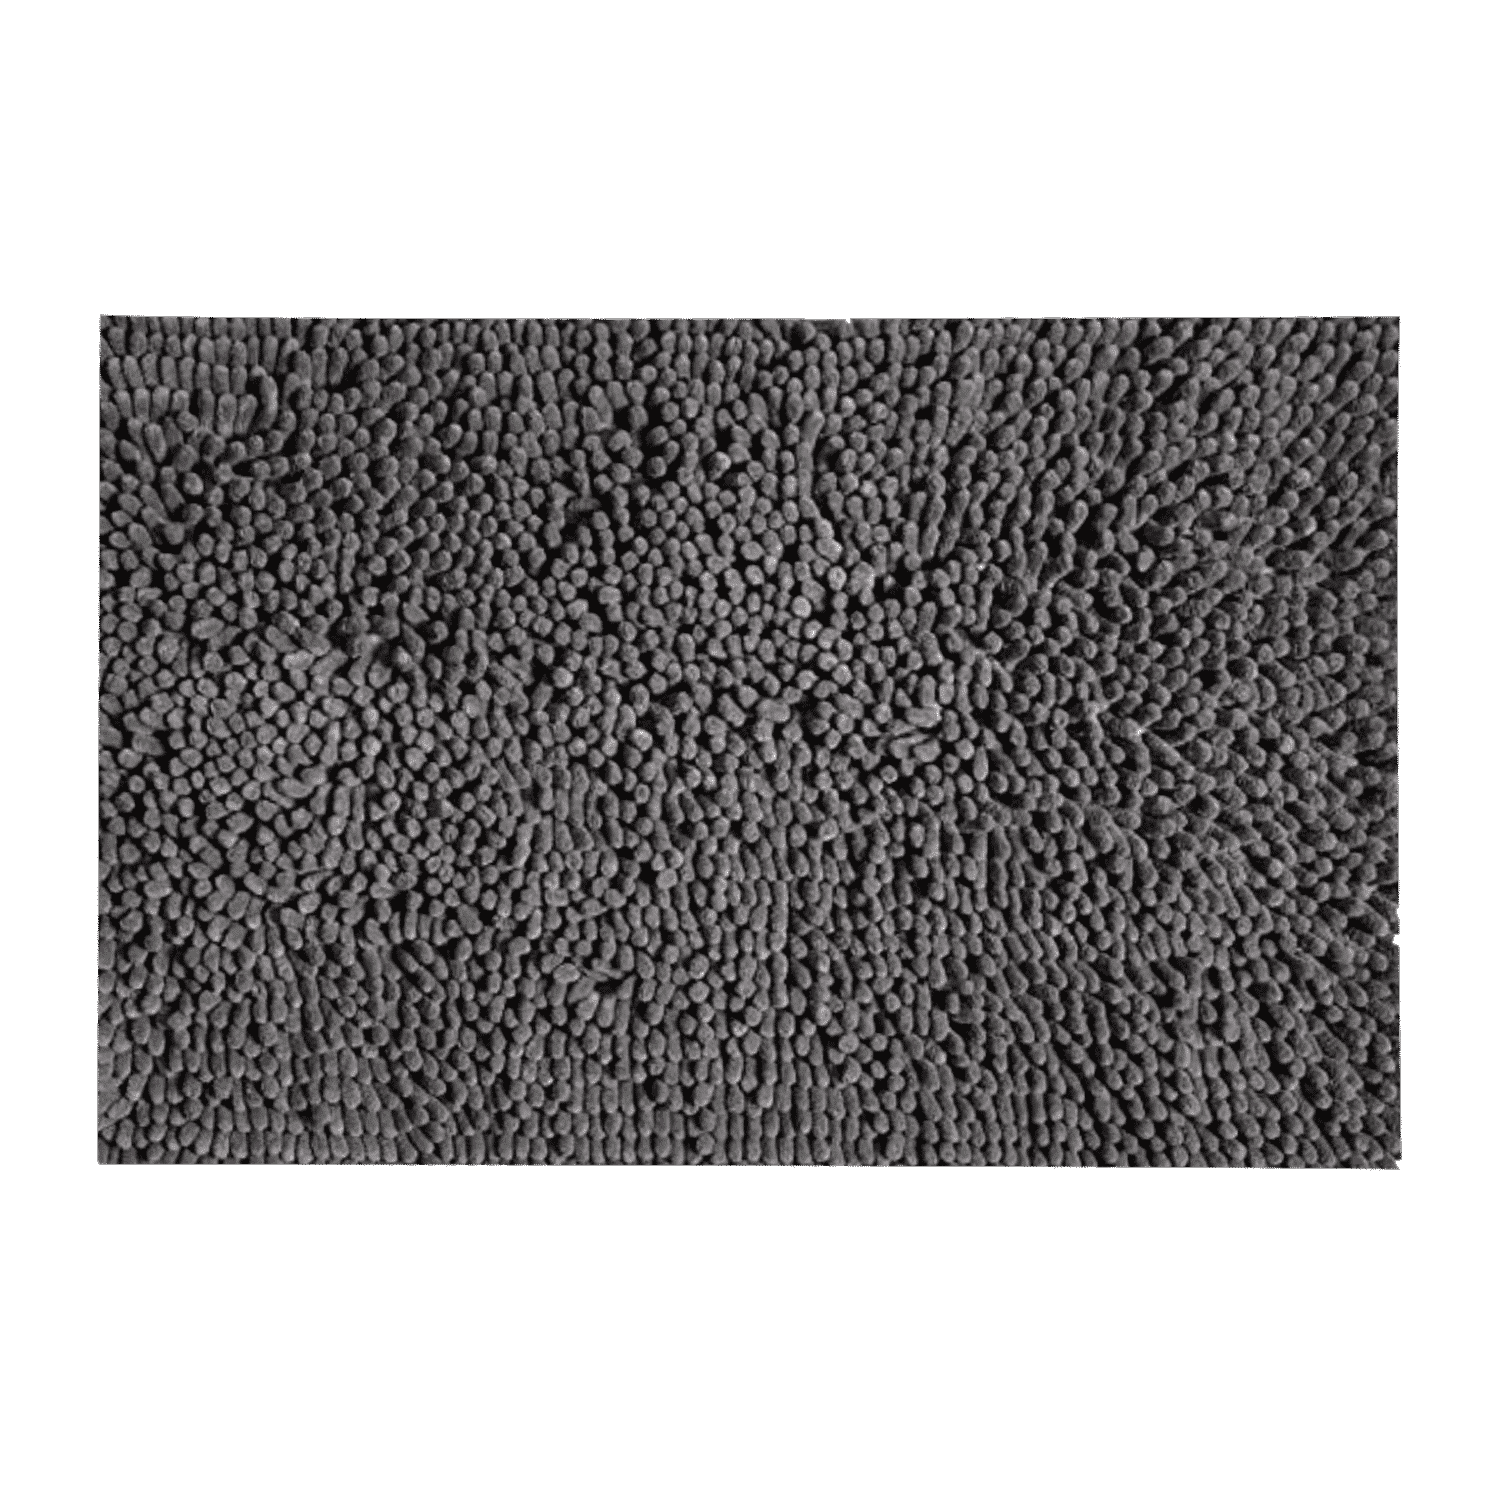 Tappeto-da-bagno-passatello-shaggy-grigio-scuro-poliestere-microfibra-50x80cm-60x120cm-tinta-unita